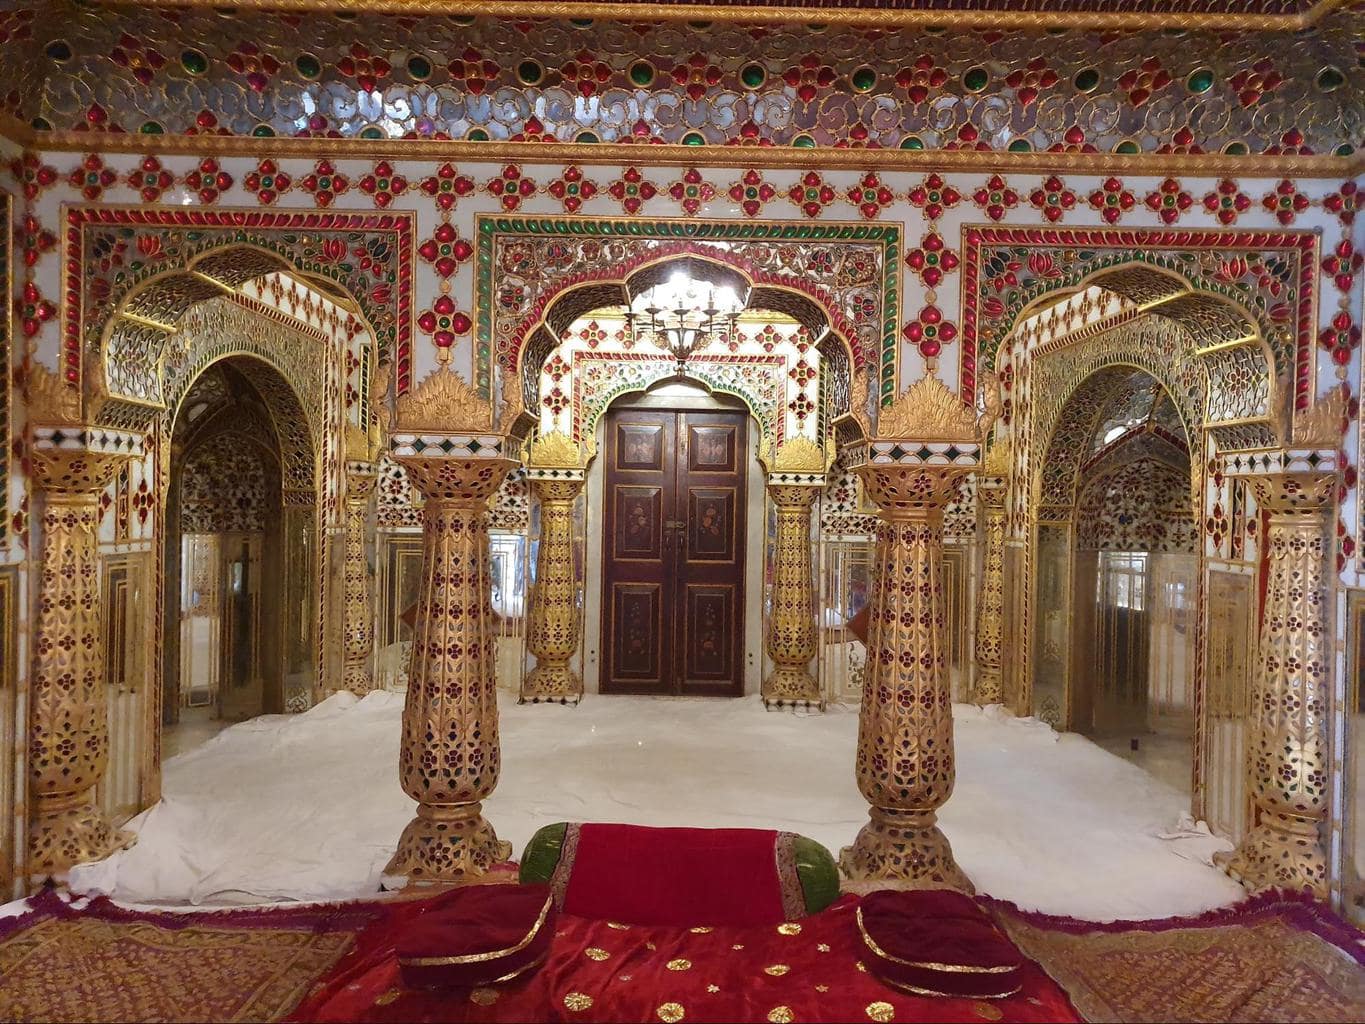 Shoba Niwas at Jaipur’s City Palace